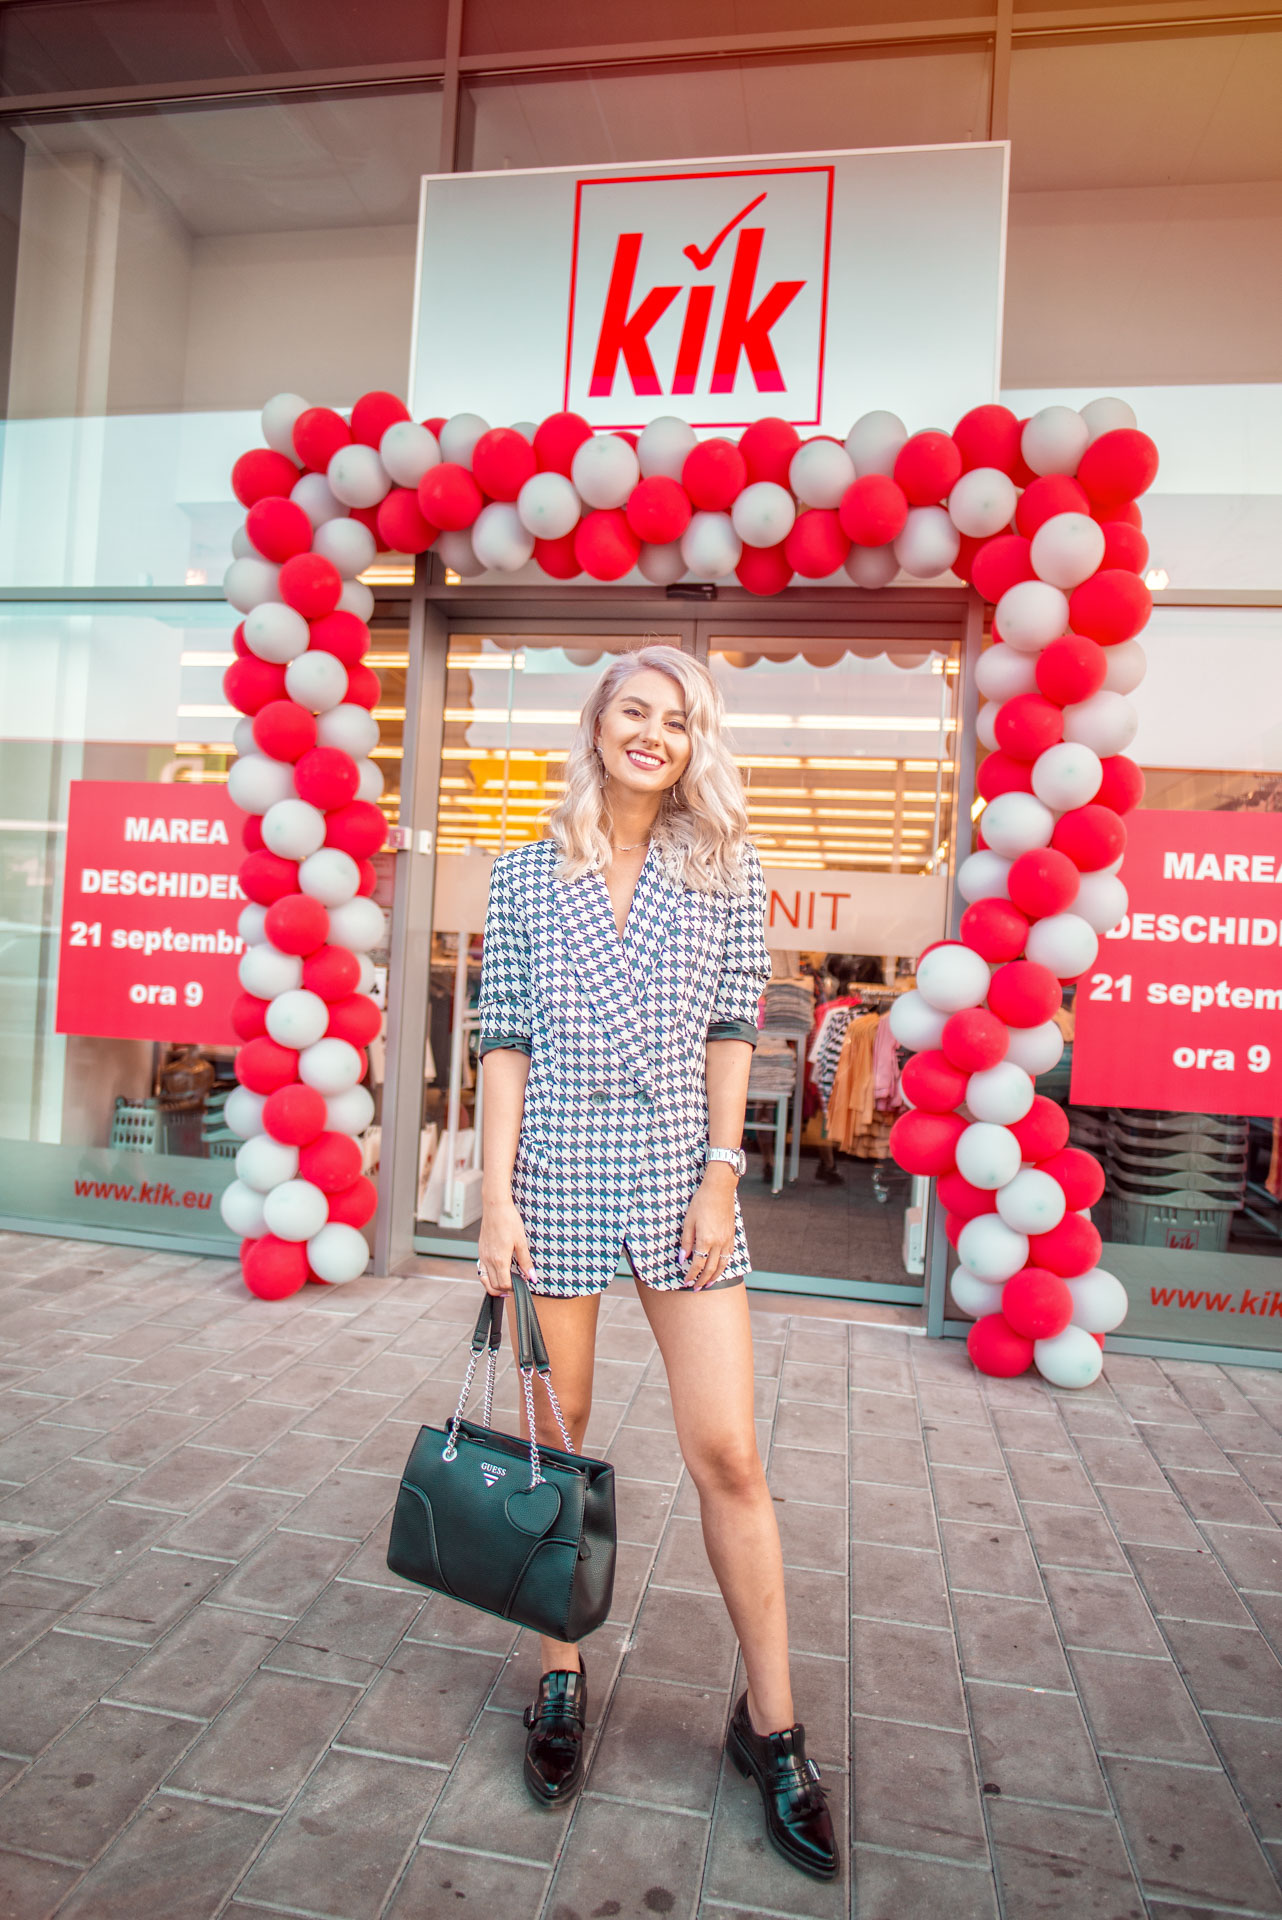 S-a deschis primul magazin KIK in Oradea_Iulia Andrei